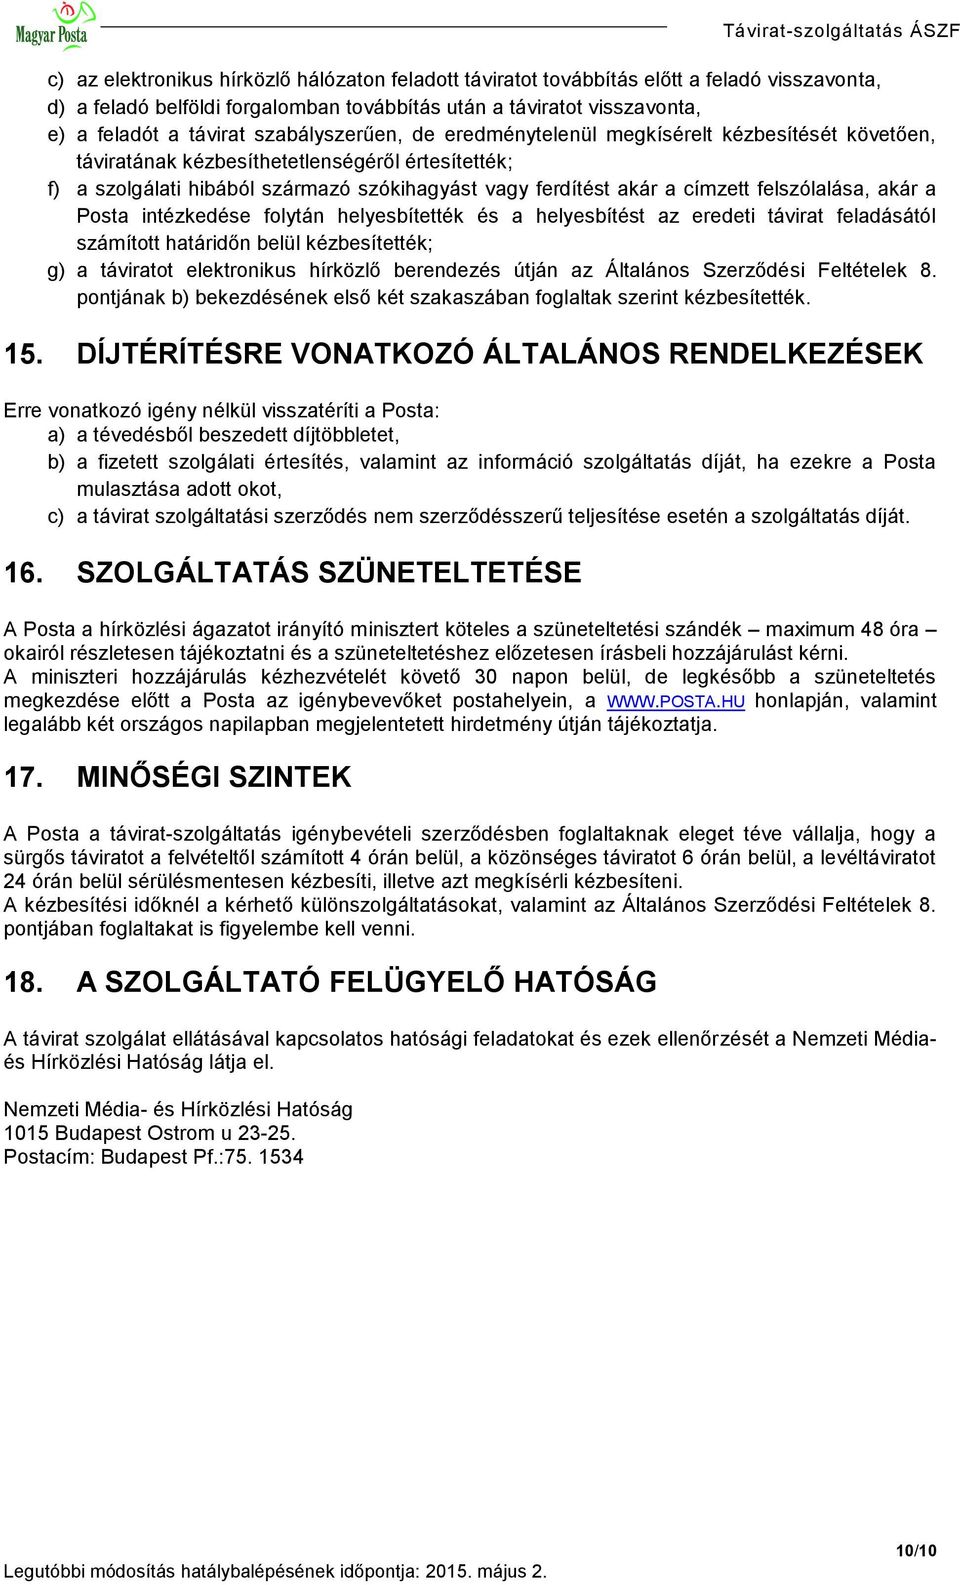 TÁVIRAT-SZOLGÁLTATÁS ÁLTALÁNOS SZERZŐDÉSI FELTÉTELEI - PDF Ingyenes letöltés